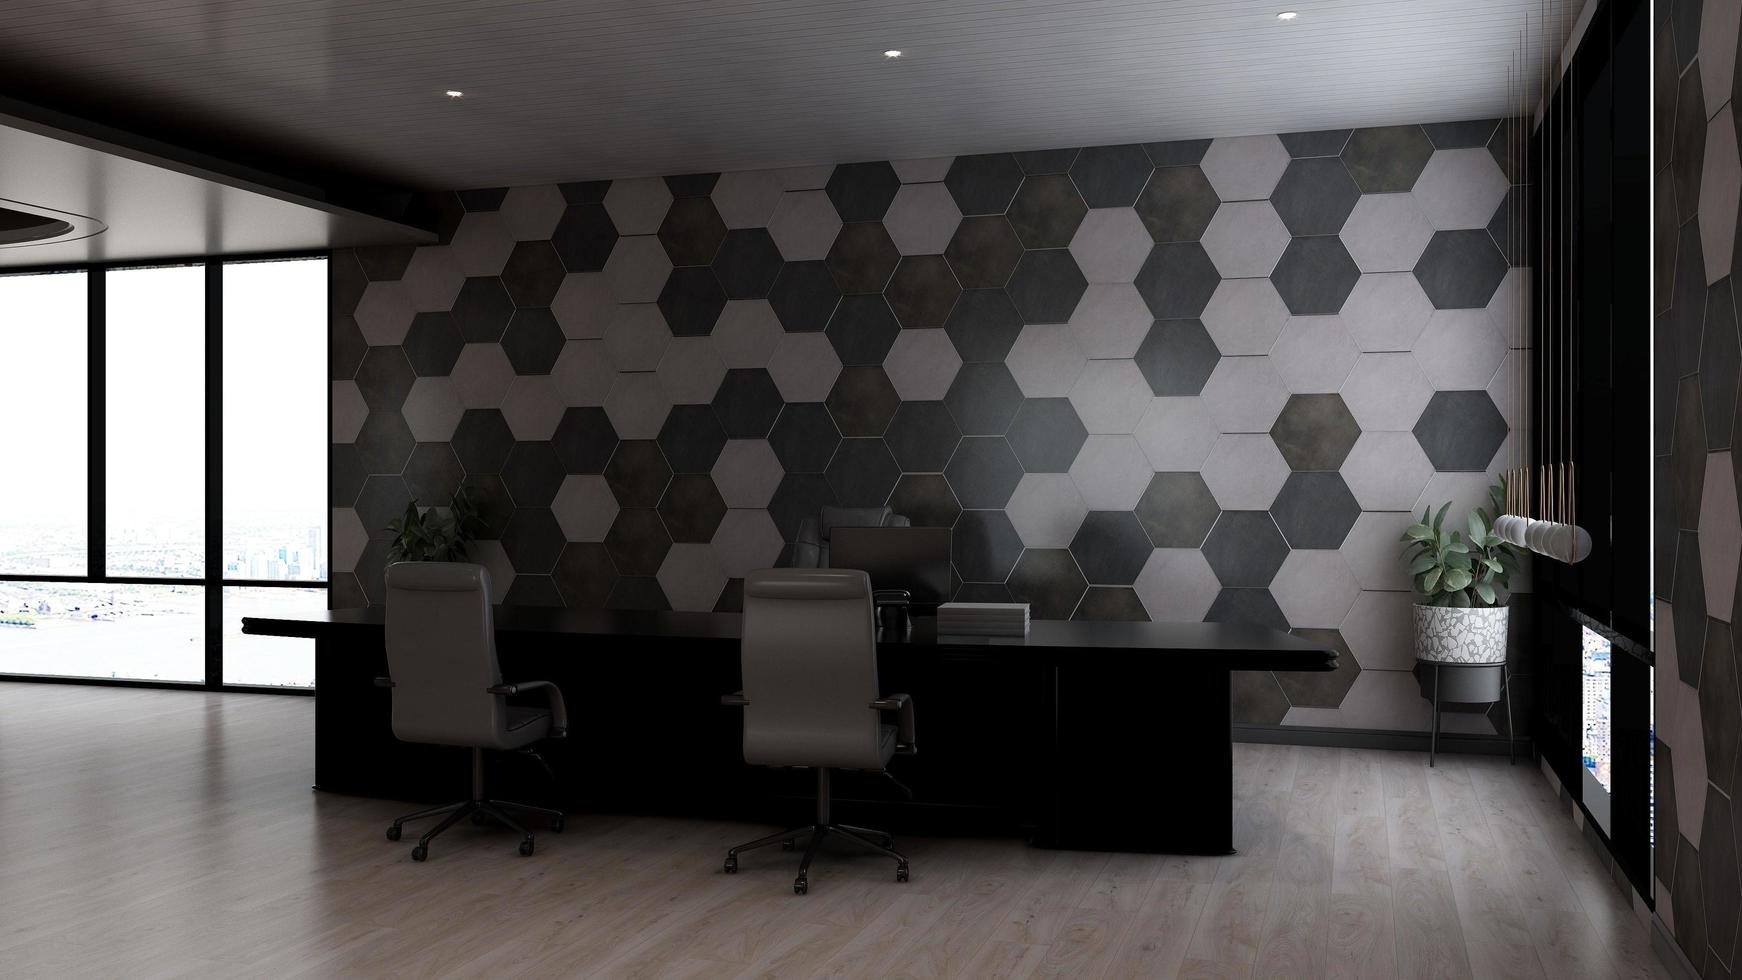 3d renderização moderna sala de gerente de escritório de negócios foto